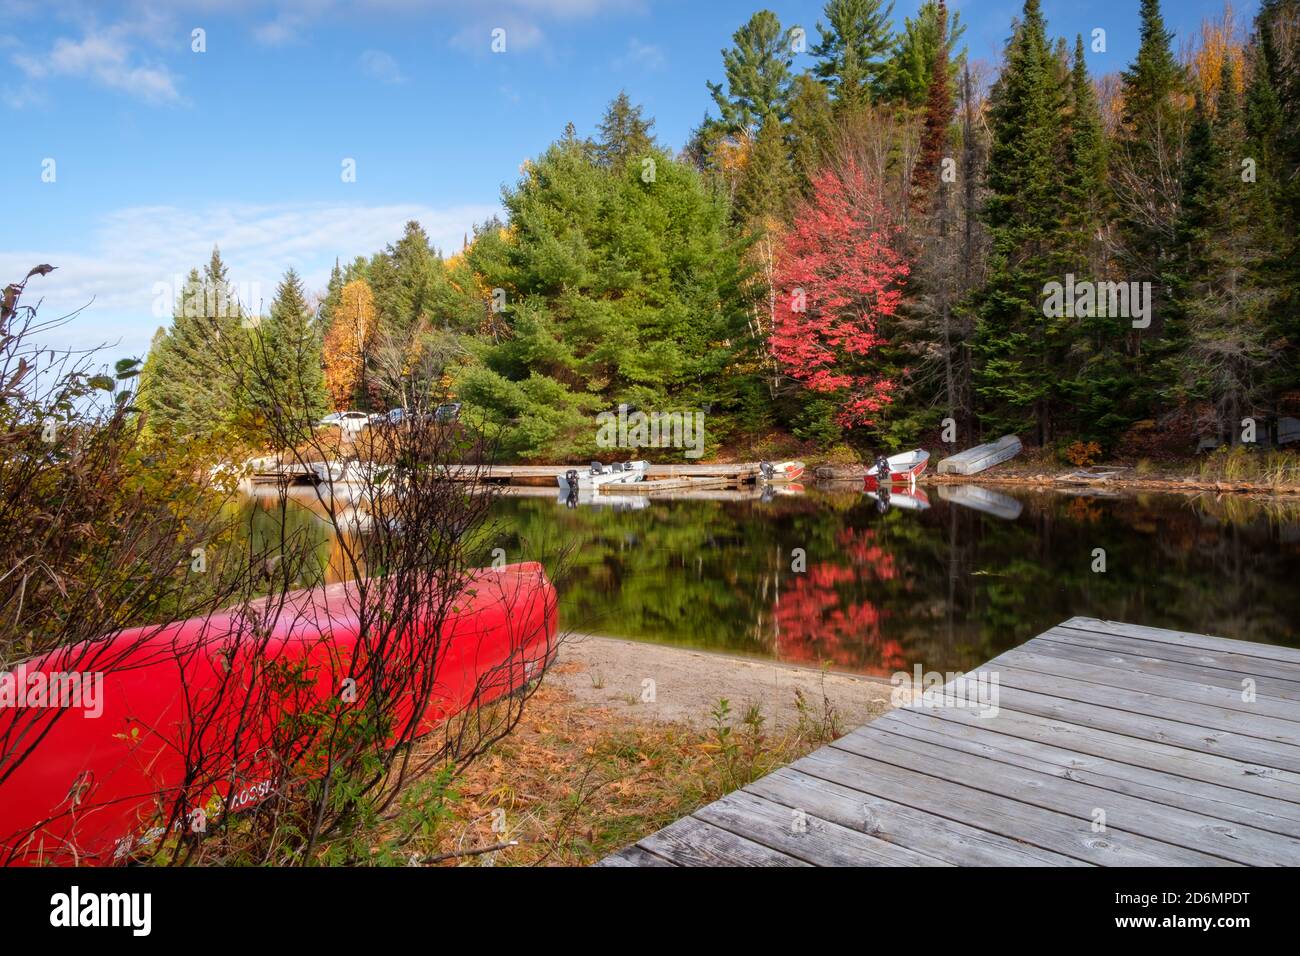 Paisaje canadiense clásico canoas rojas y arce rojo reflejado en un lago Foto de stock